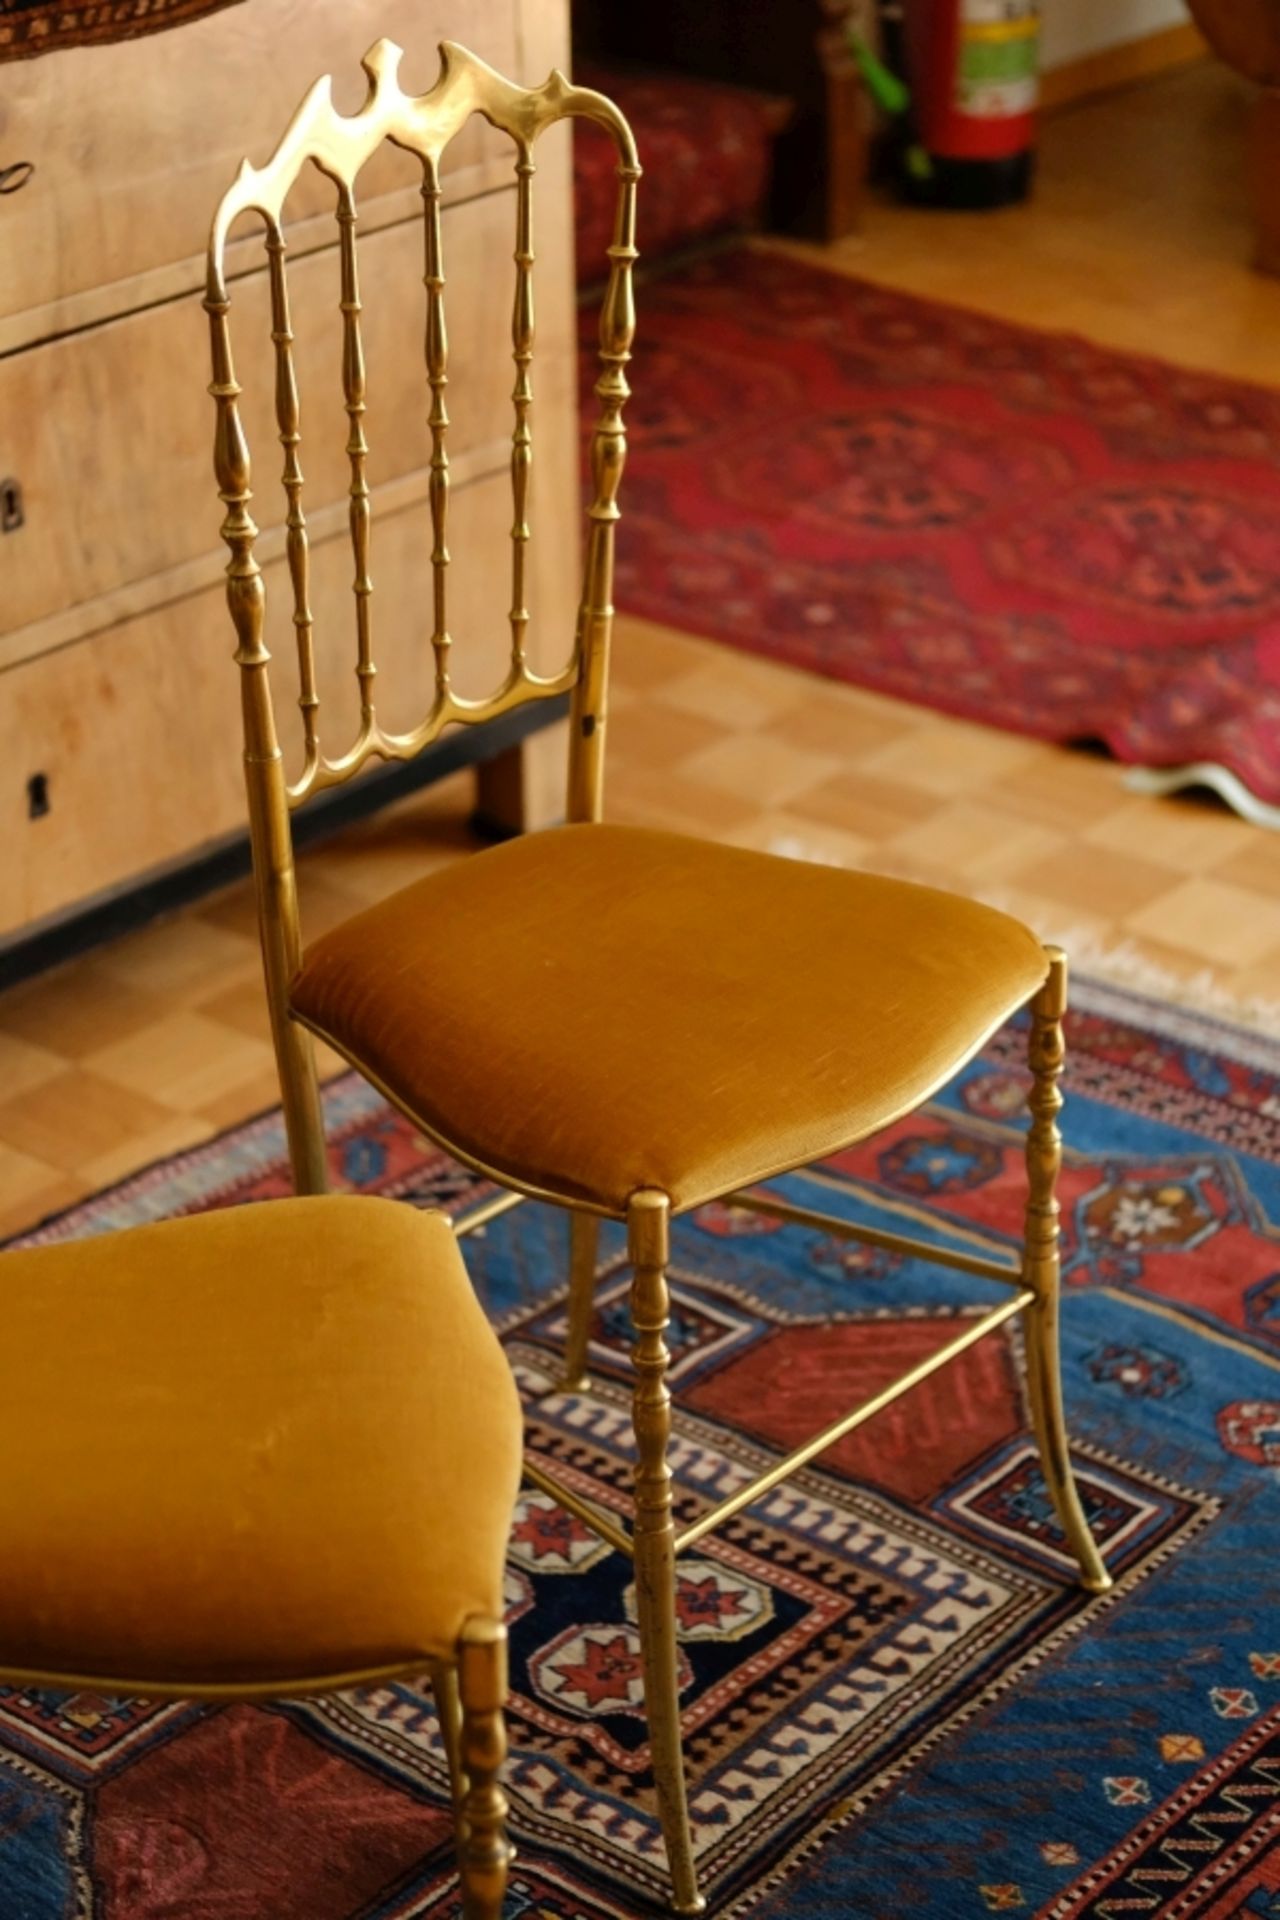 2 METALLSTüHLE, im Stil von Chiavari-Stühlen - Bild 2 aus 3